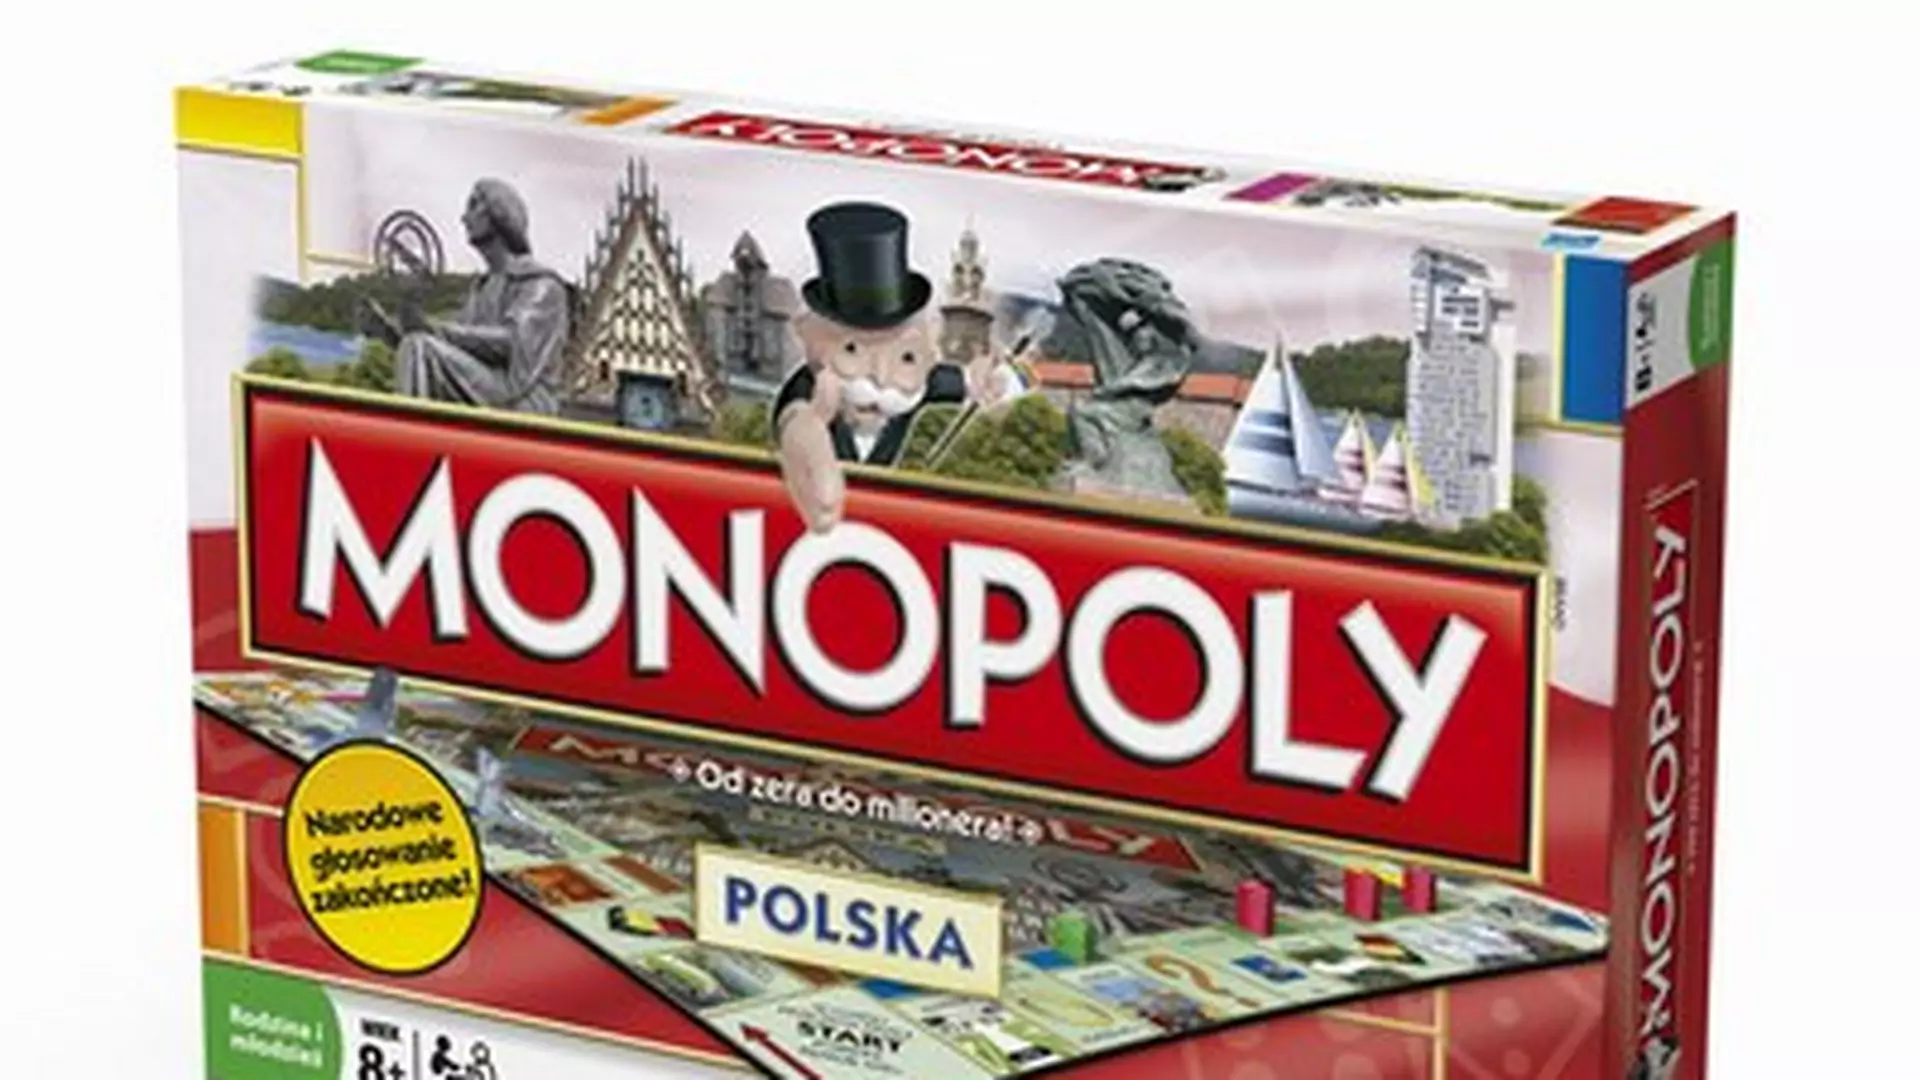 Monopoly - Polska w grze!